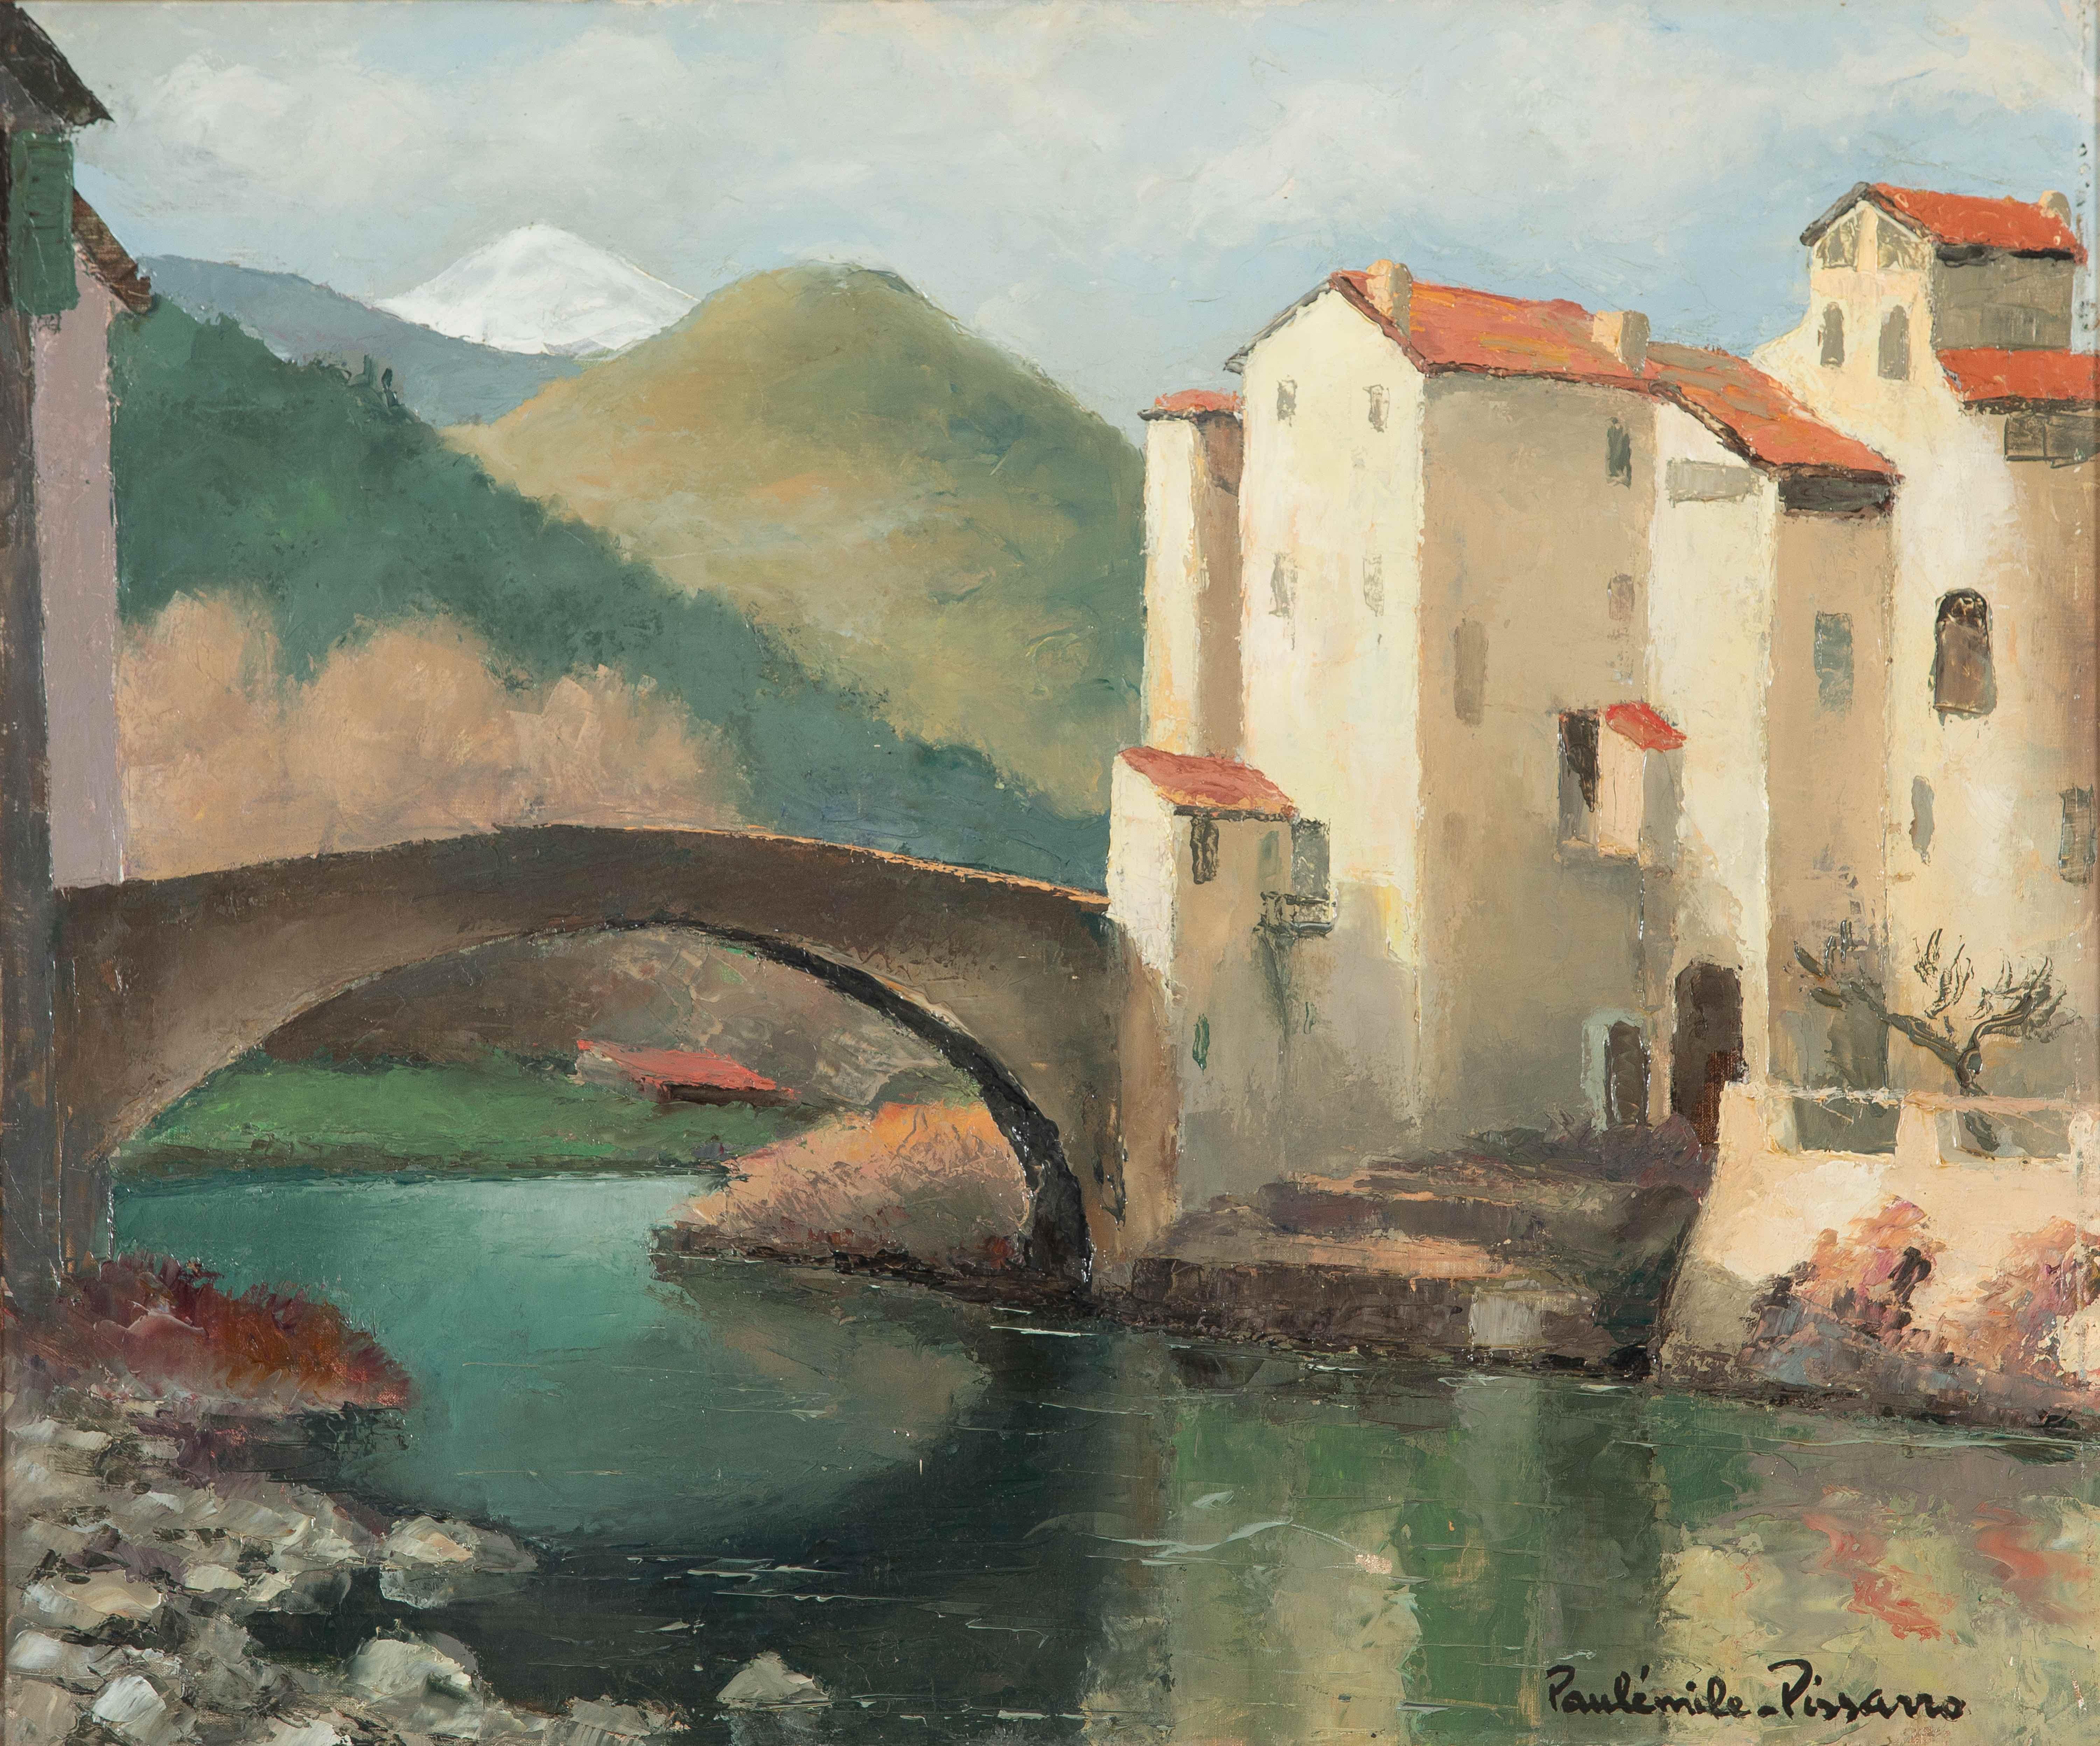 La Bevera, Sospel by Paulémile Pissarro - Landscape, oil painting